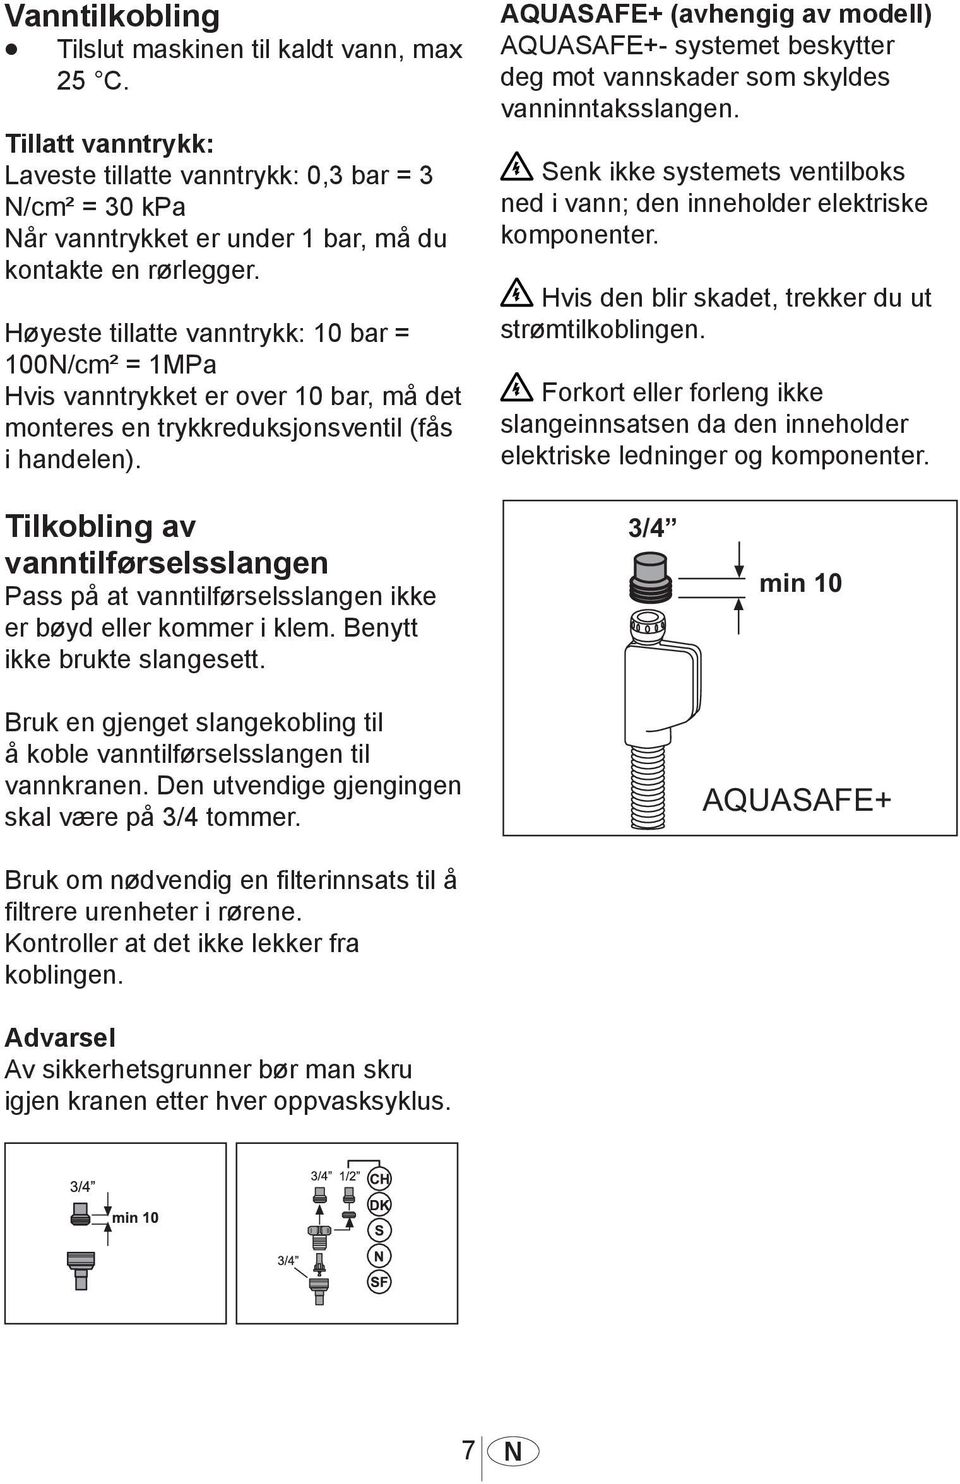 AQUASAFE+ (avhengig av modell) AQUASAFE+- systemet beskytter deg mot vannskader som skyldes vanninntaksslangen. Senk ikke systemets ventilboks ned i vann; den inneholder elektriske komponenter.